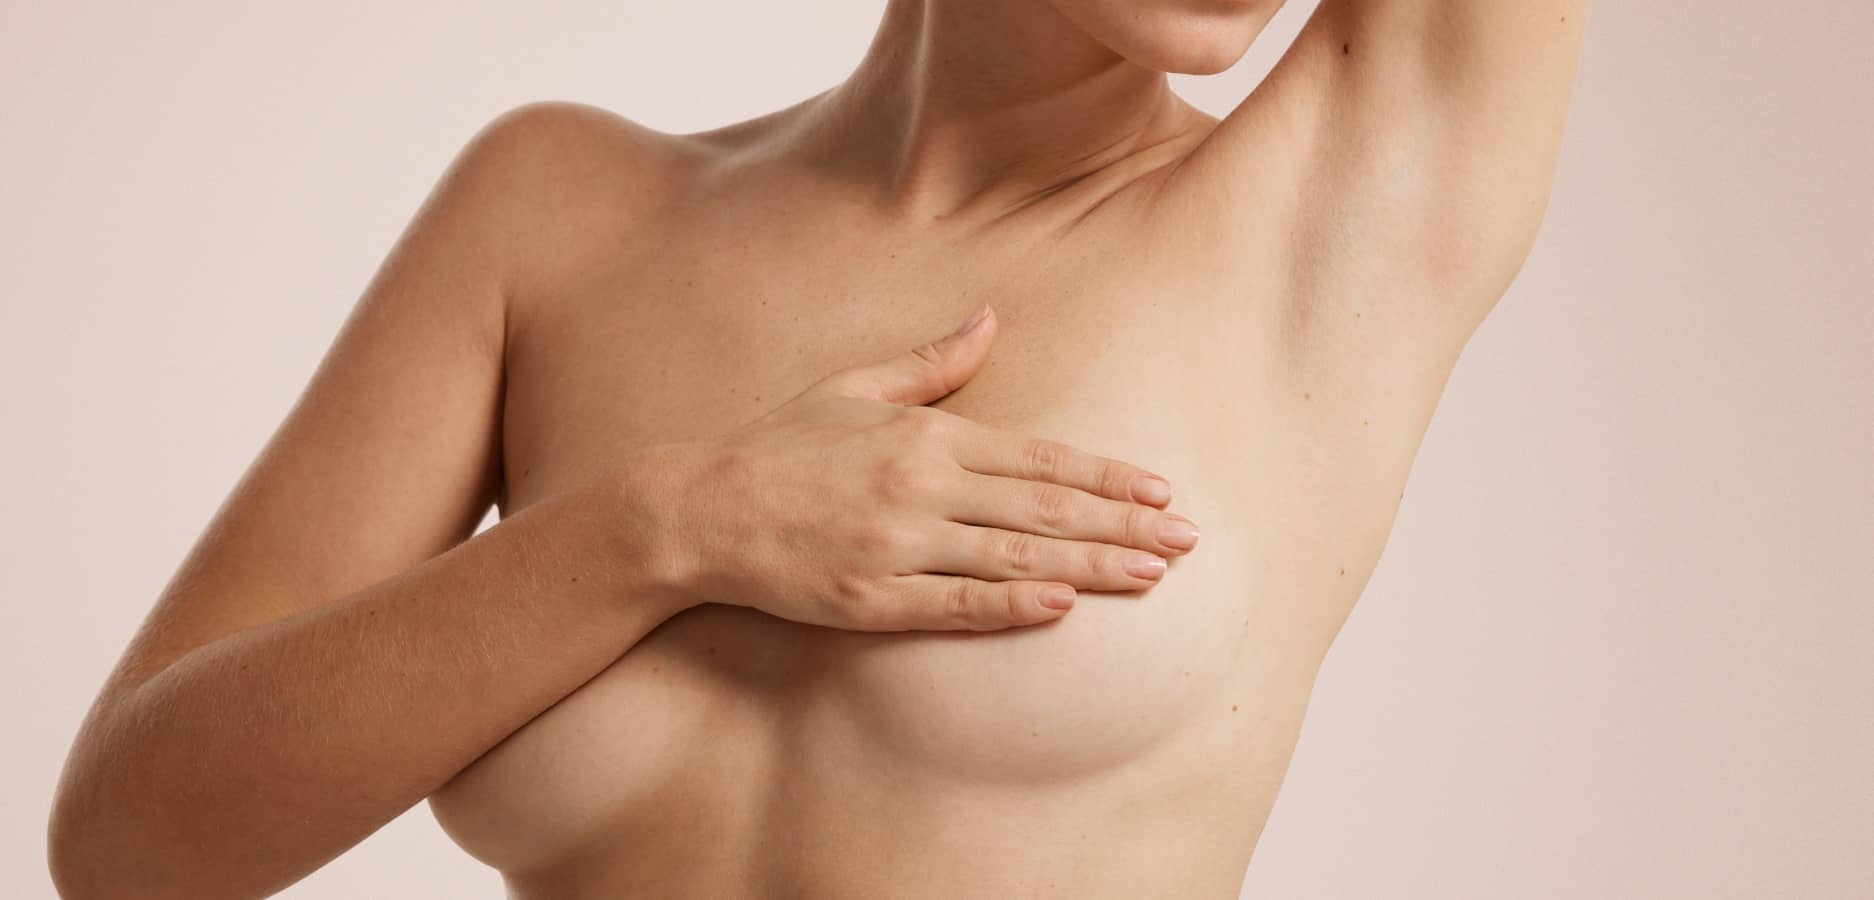 La ptose mammaire est-elle inévitable quand on prend de l’âge ? | Dr Sarfati | Paris